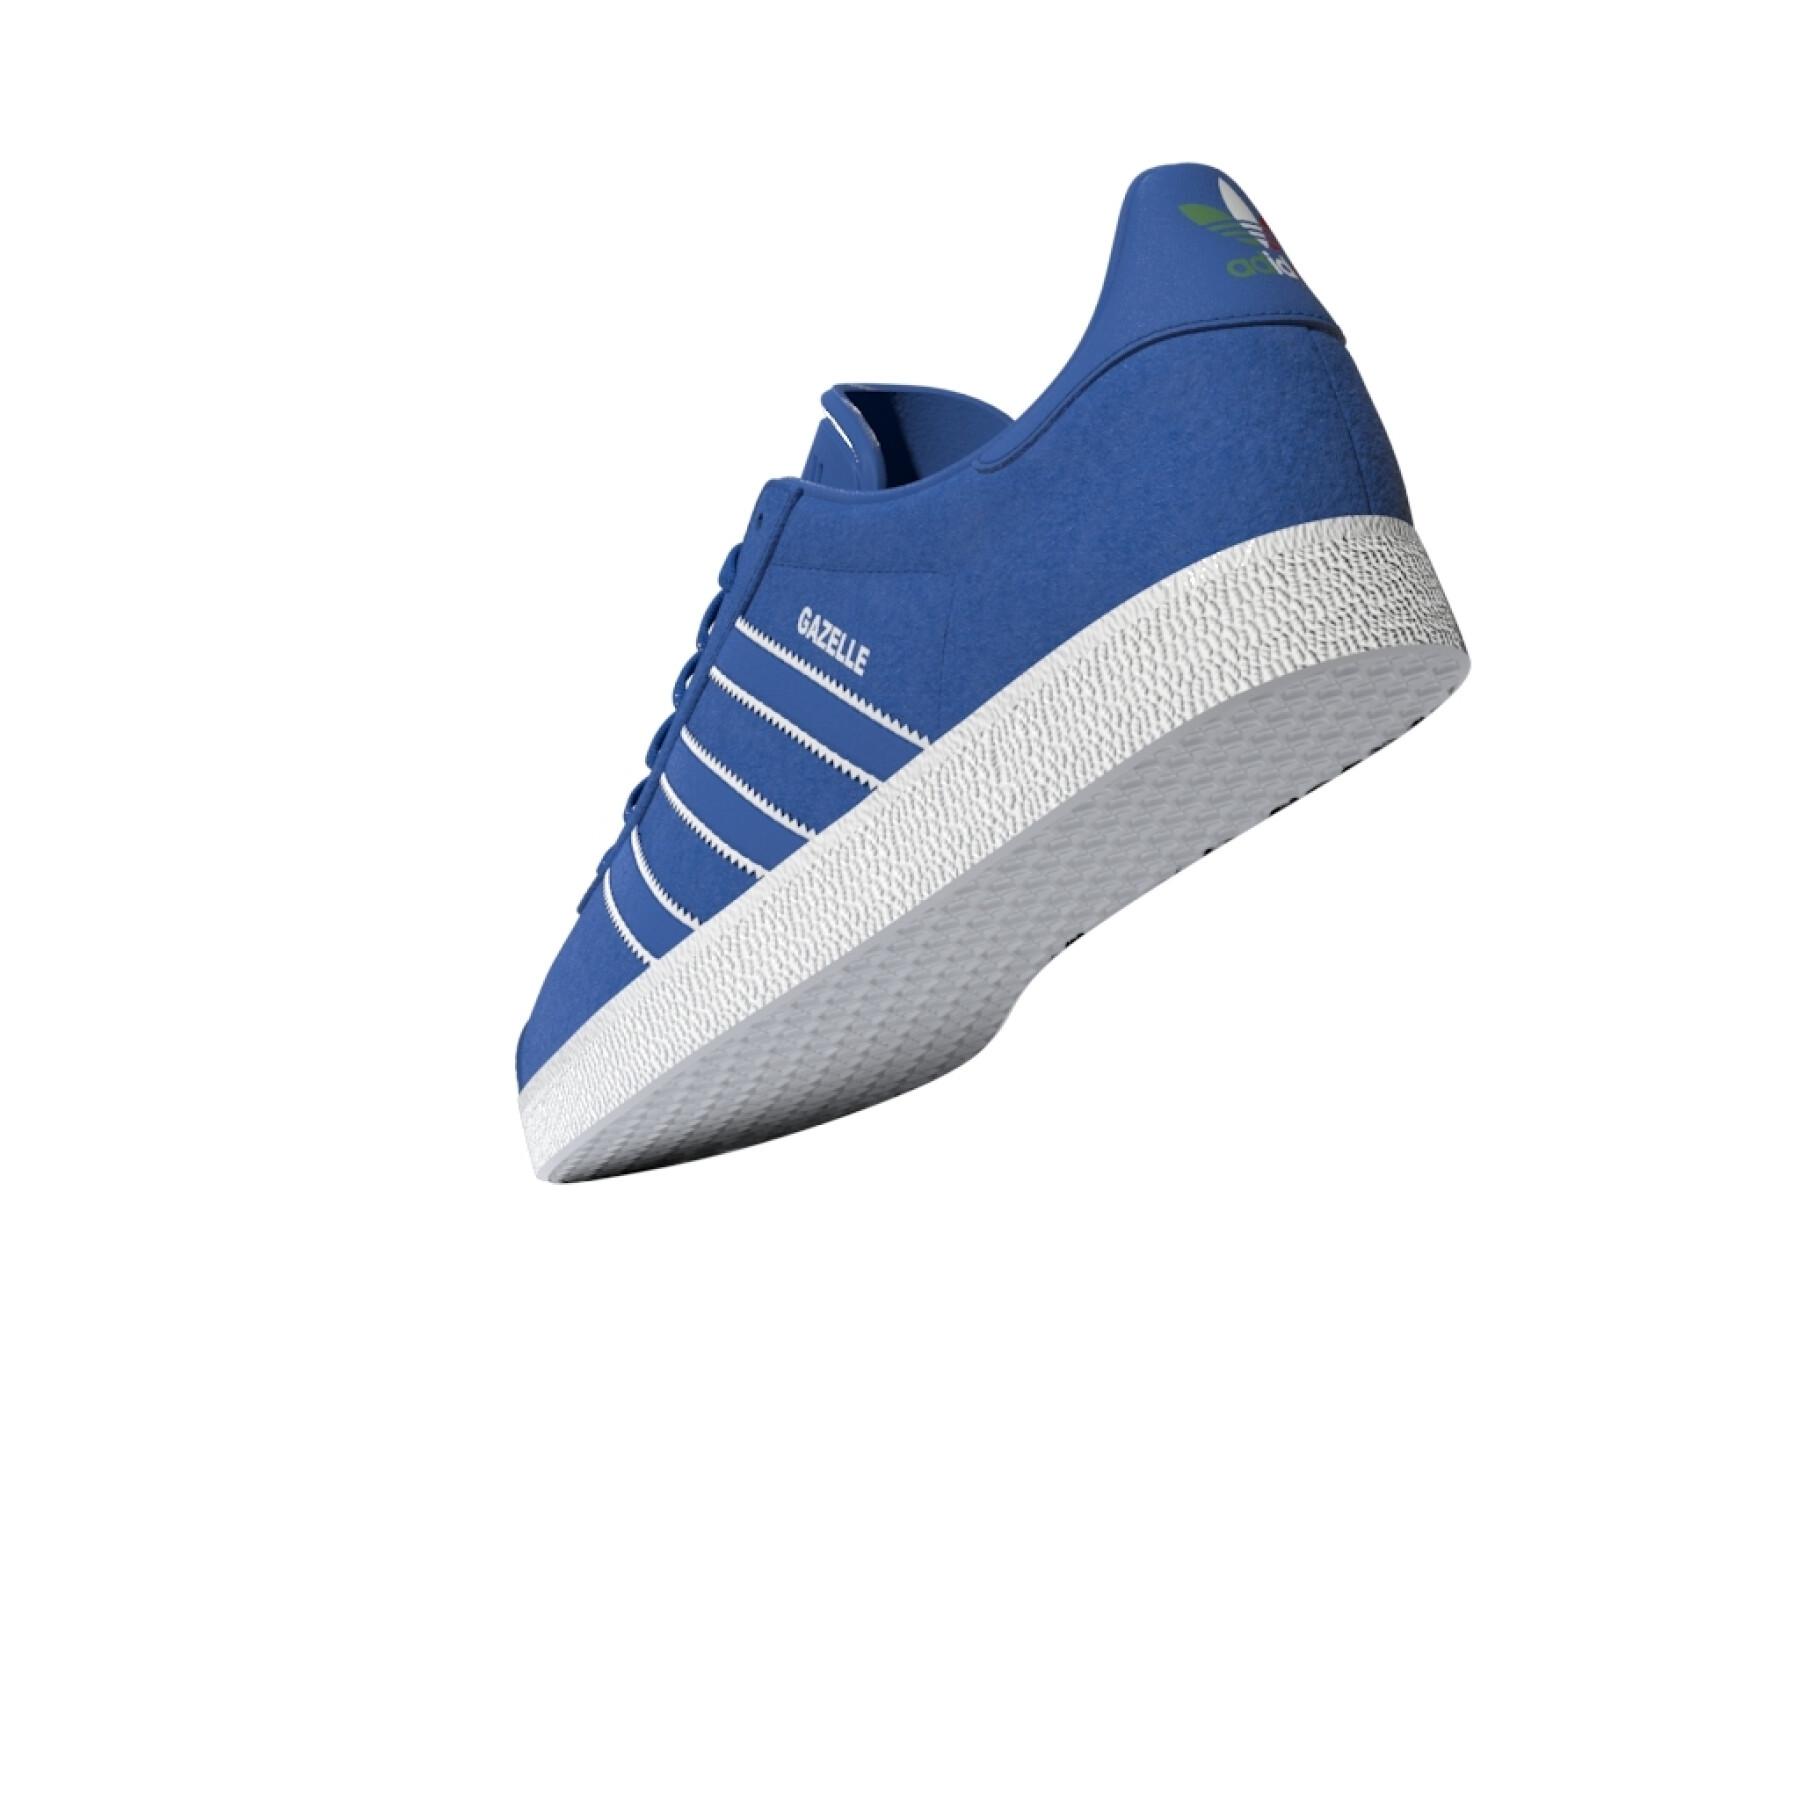 Sneakers adidas Originals Gazelle